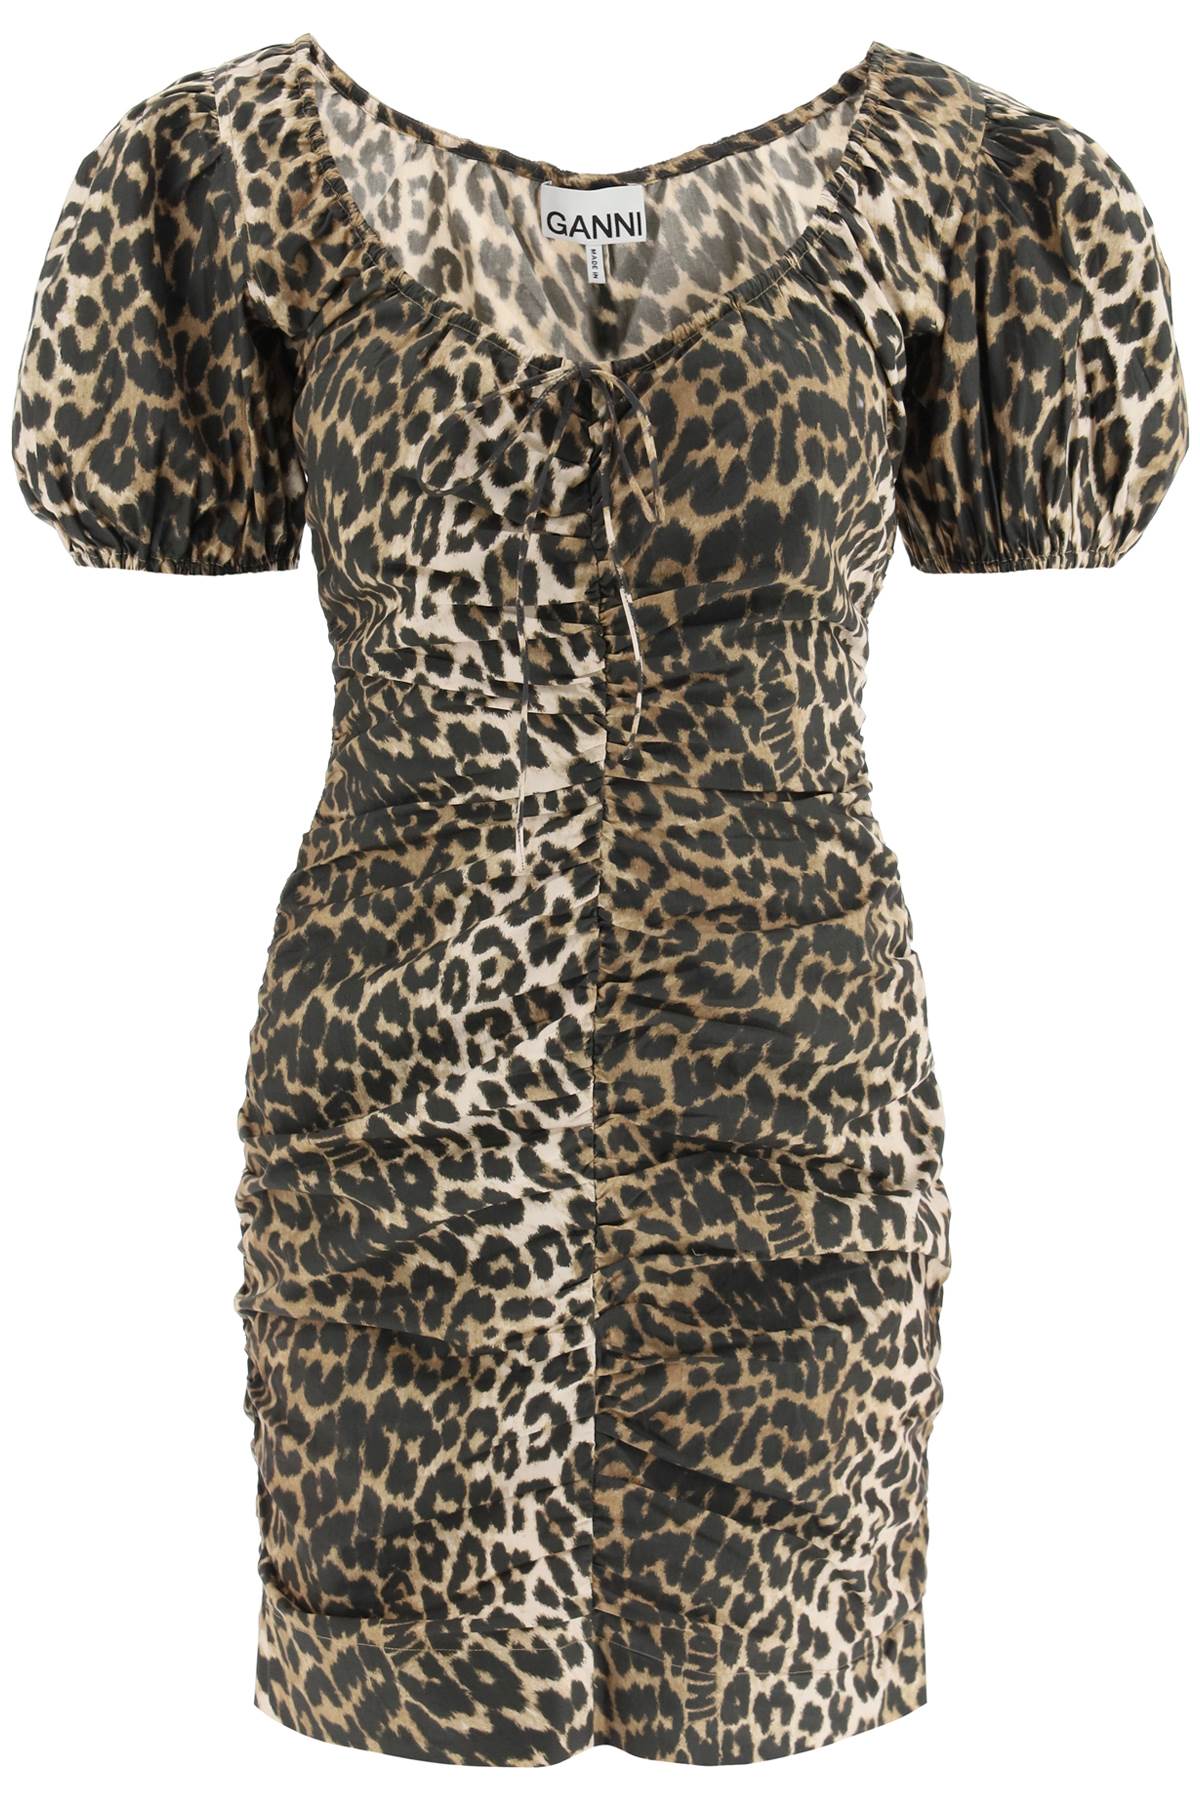 Ganni Leopard Poplin Mini Dress